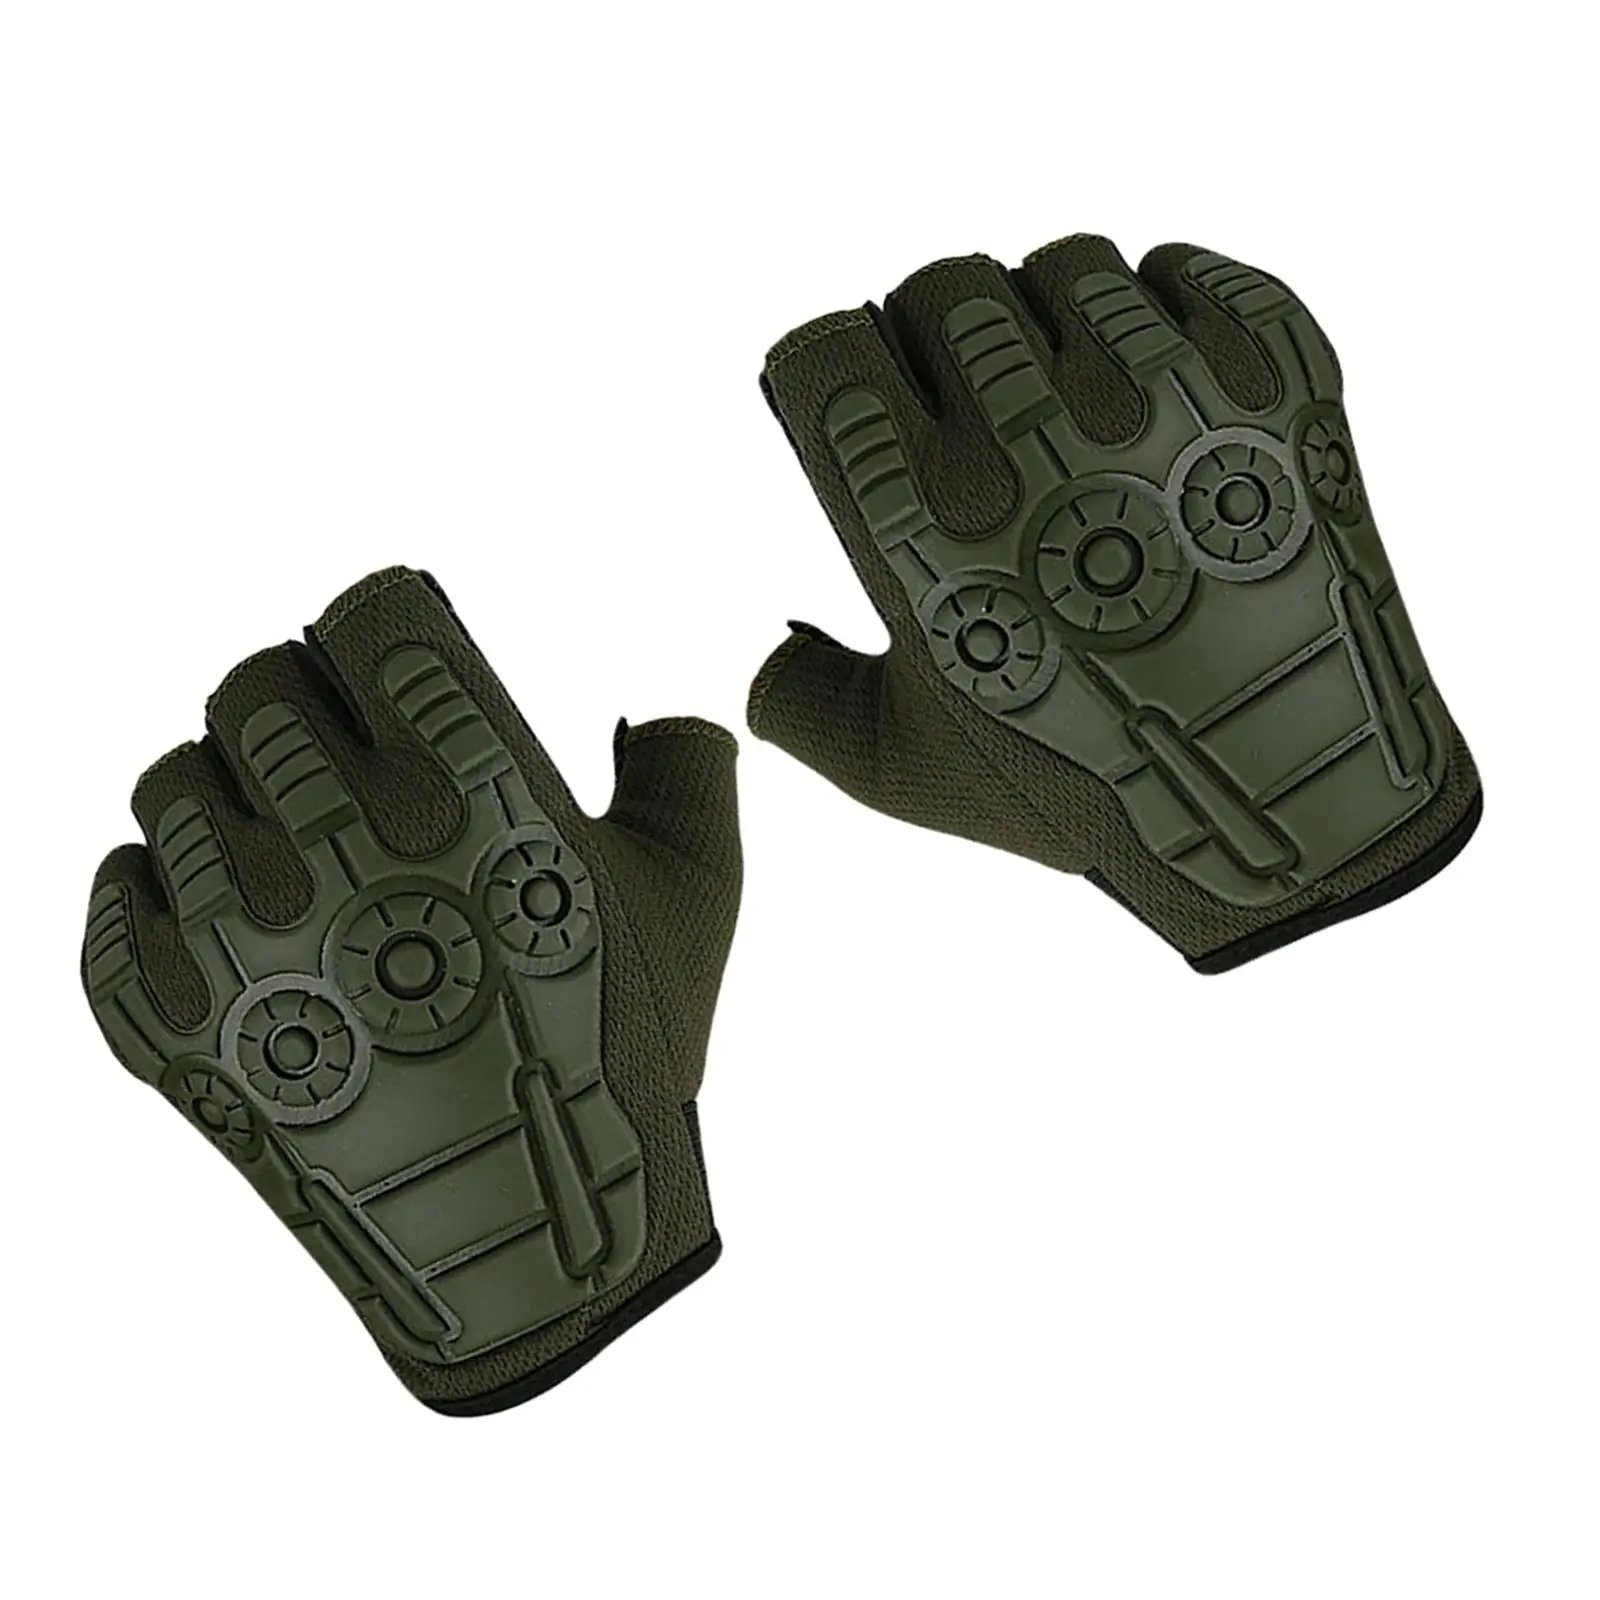 Half Finger Gloves Portable Open Finger Nonslip Fingerless Gloves for Men Women